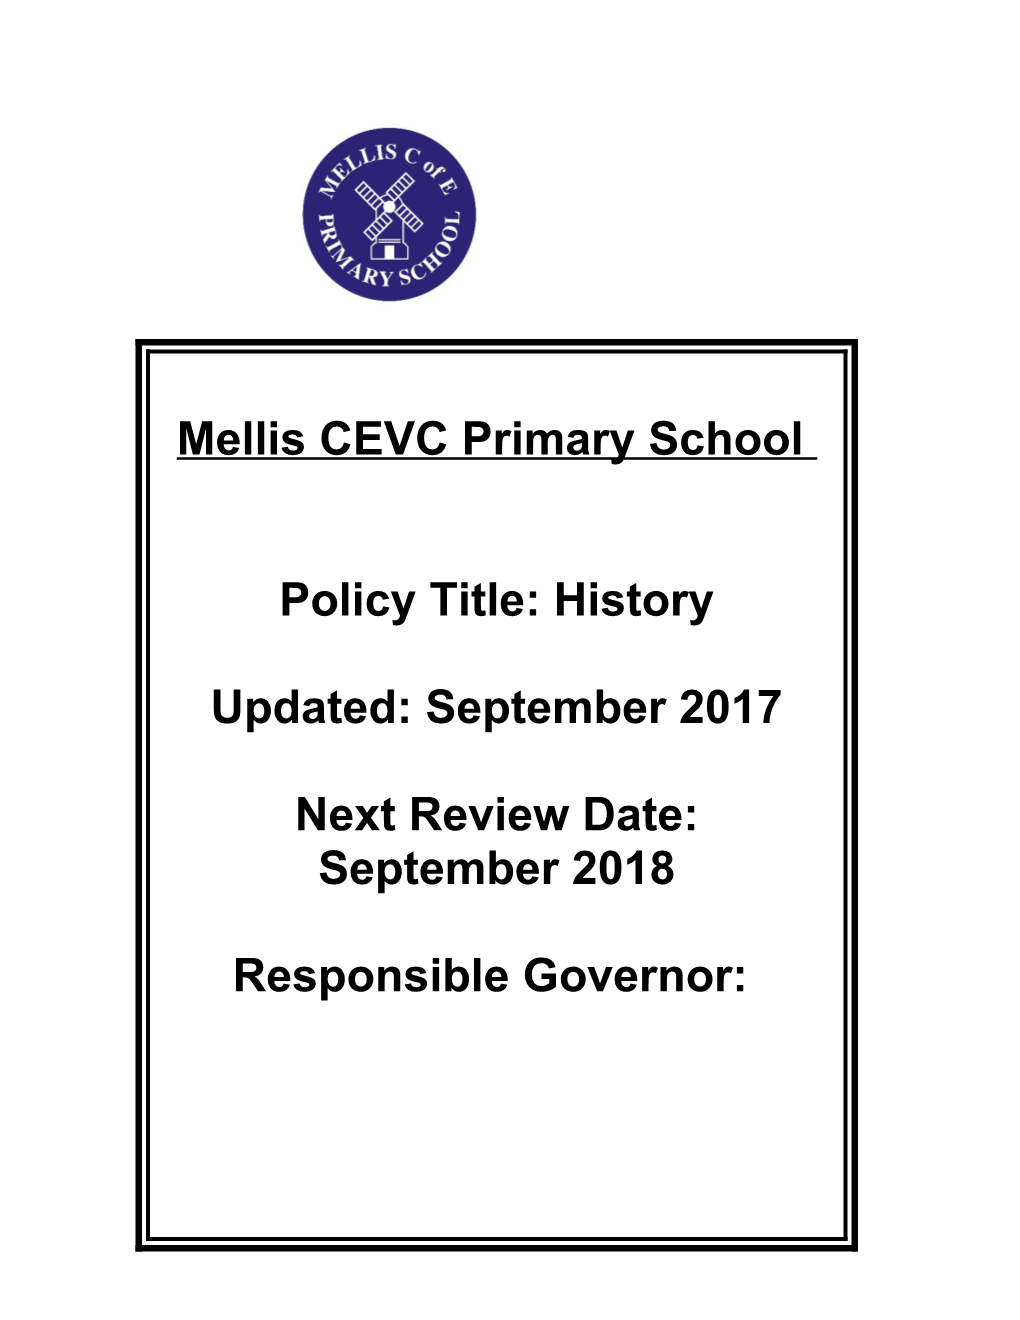 Mellis Cevc Primary School